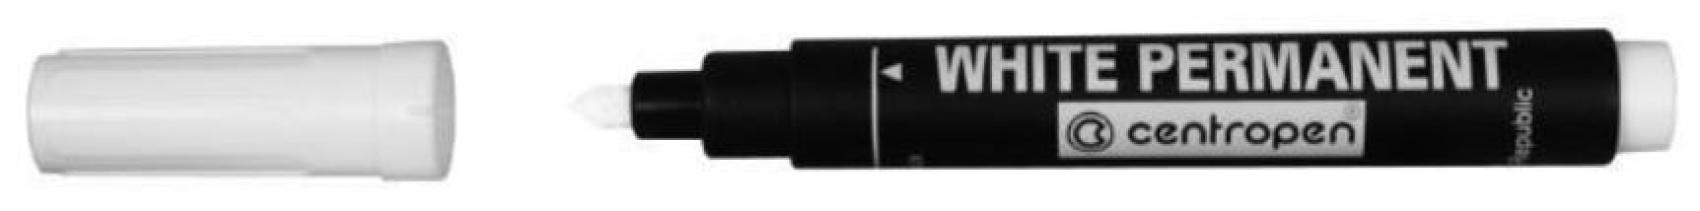 Znakova Centropen 8586 bl na vechny povrchy 2,5mm - Kliknutm na obrzek zavete